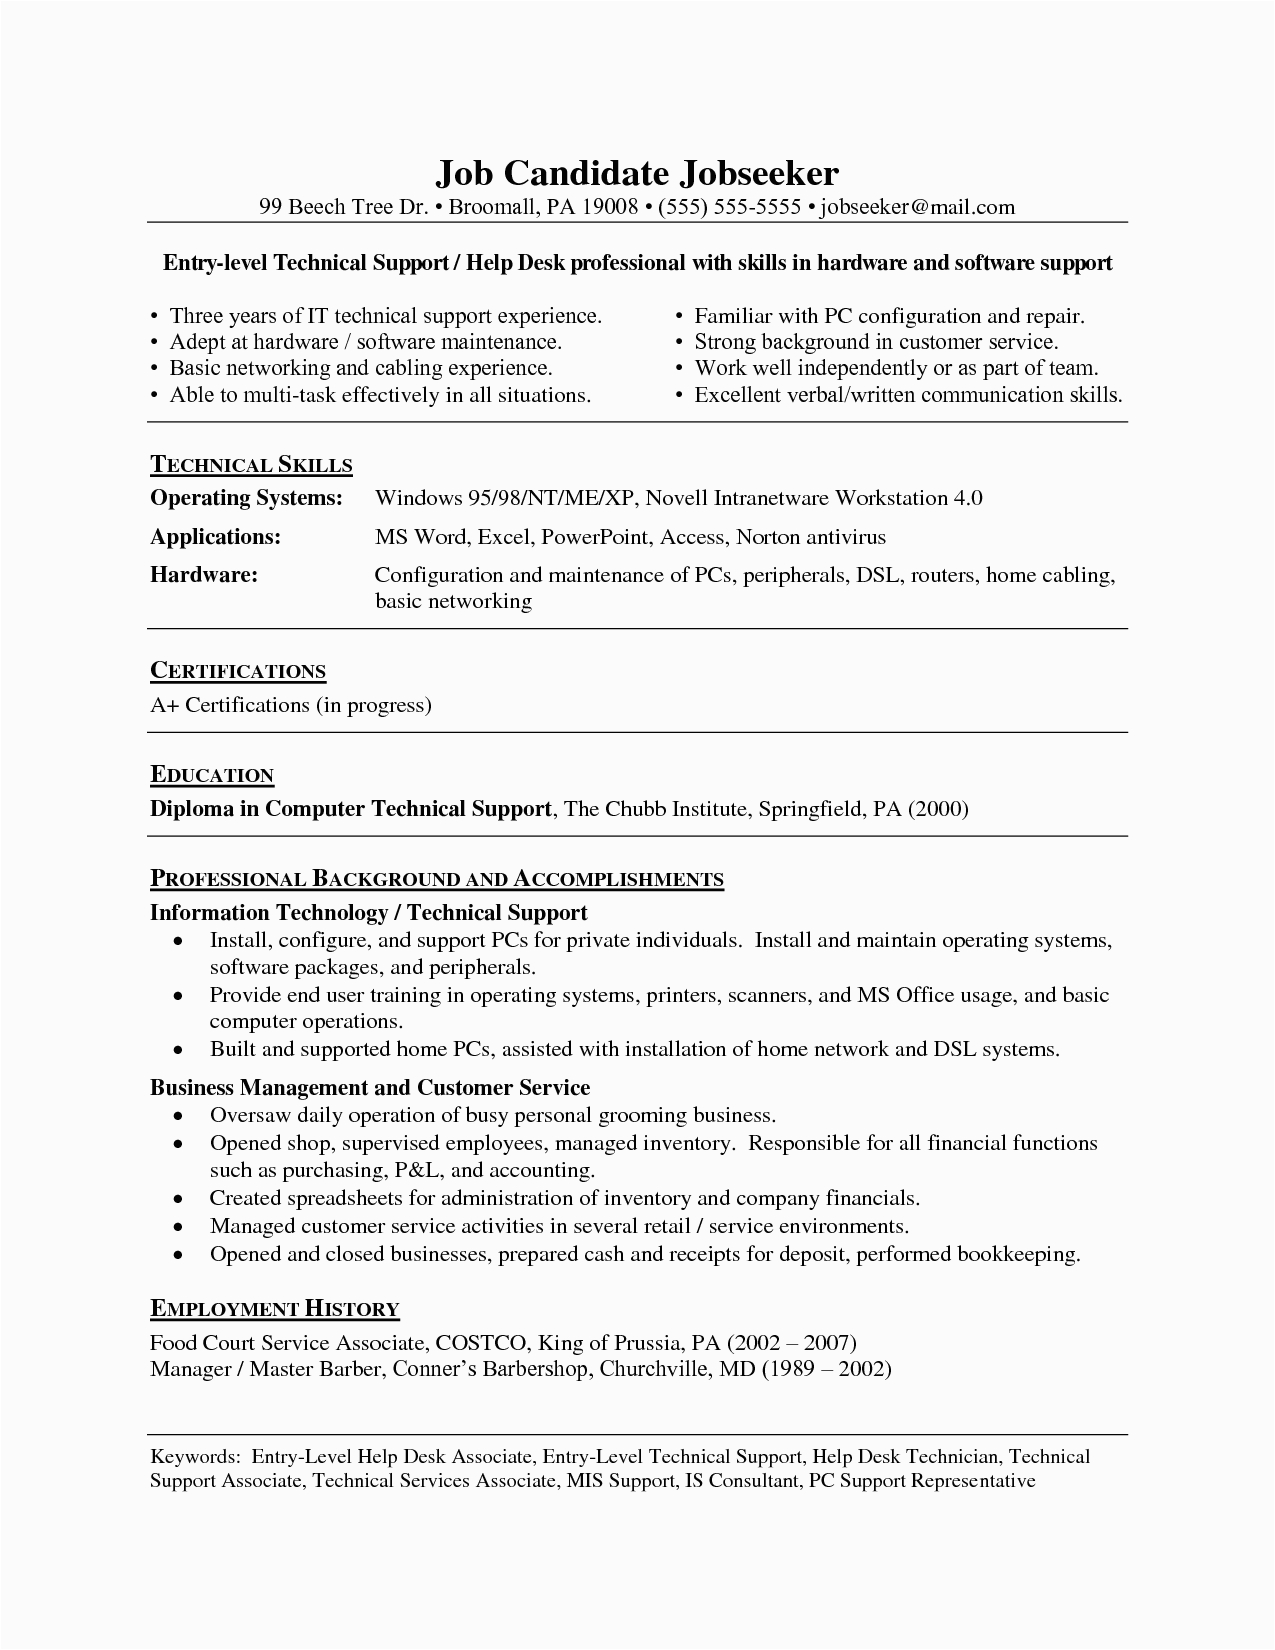 Help Desk Entry Level Resume Samples Resume for Help Desk Job Belenchamber Resume Help Cover Letter